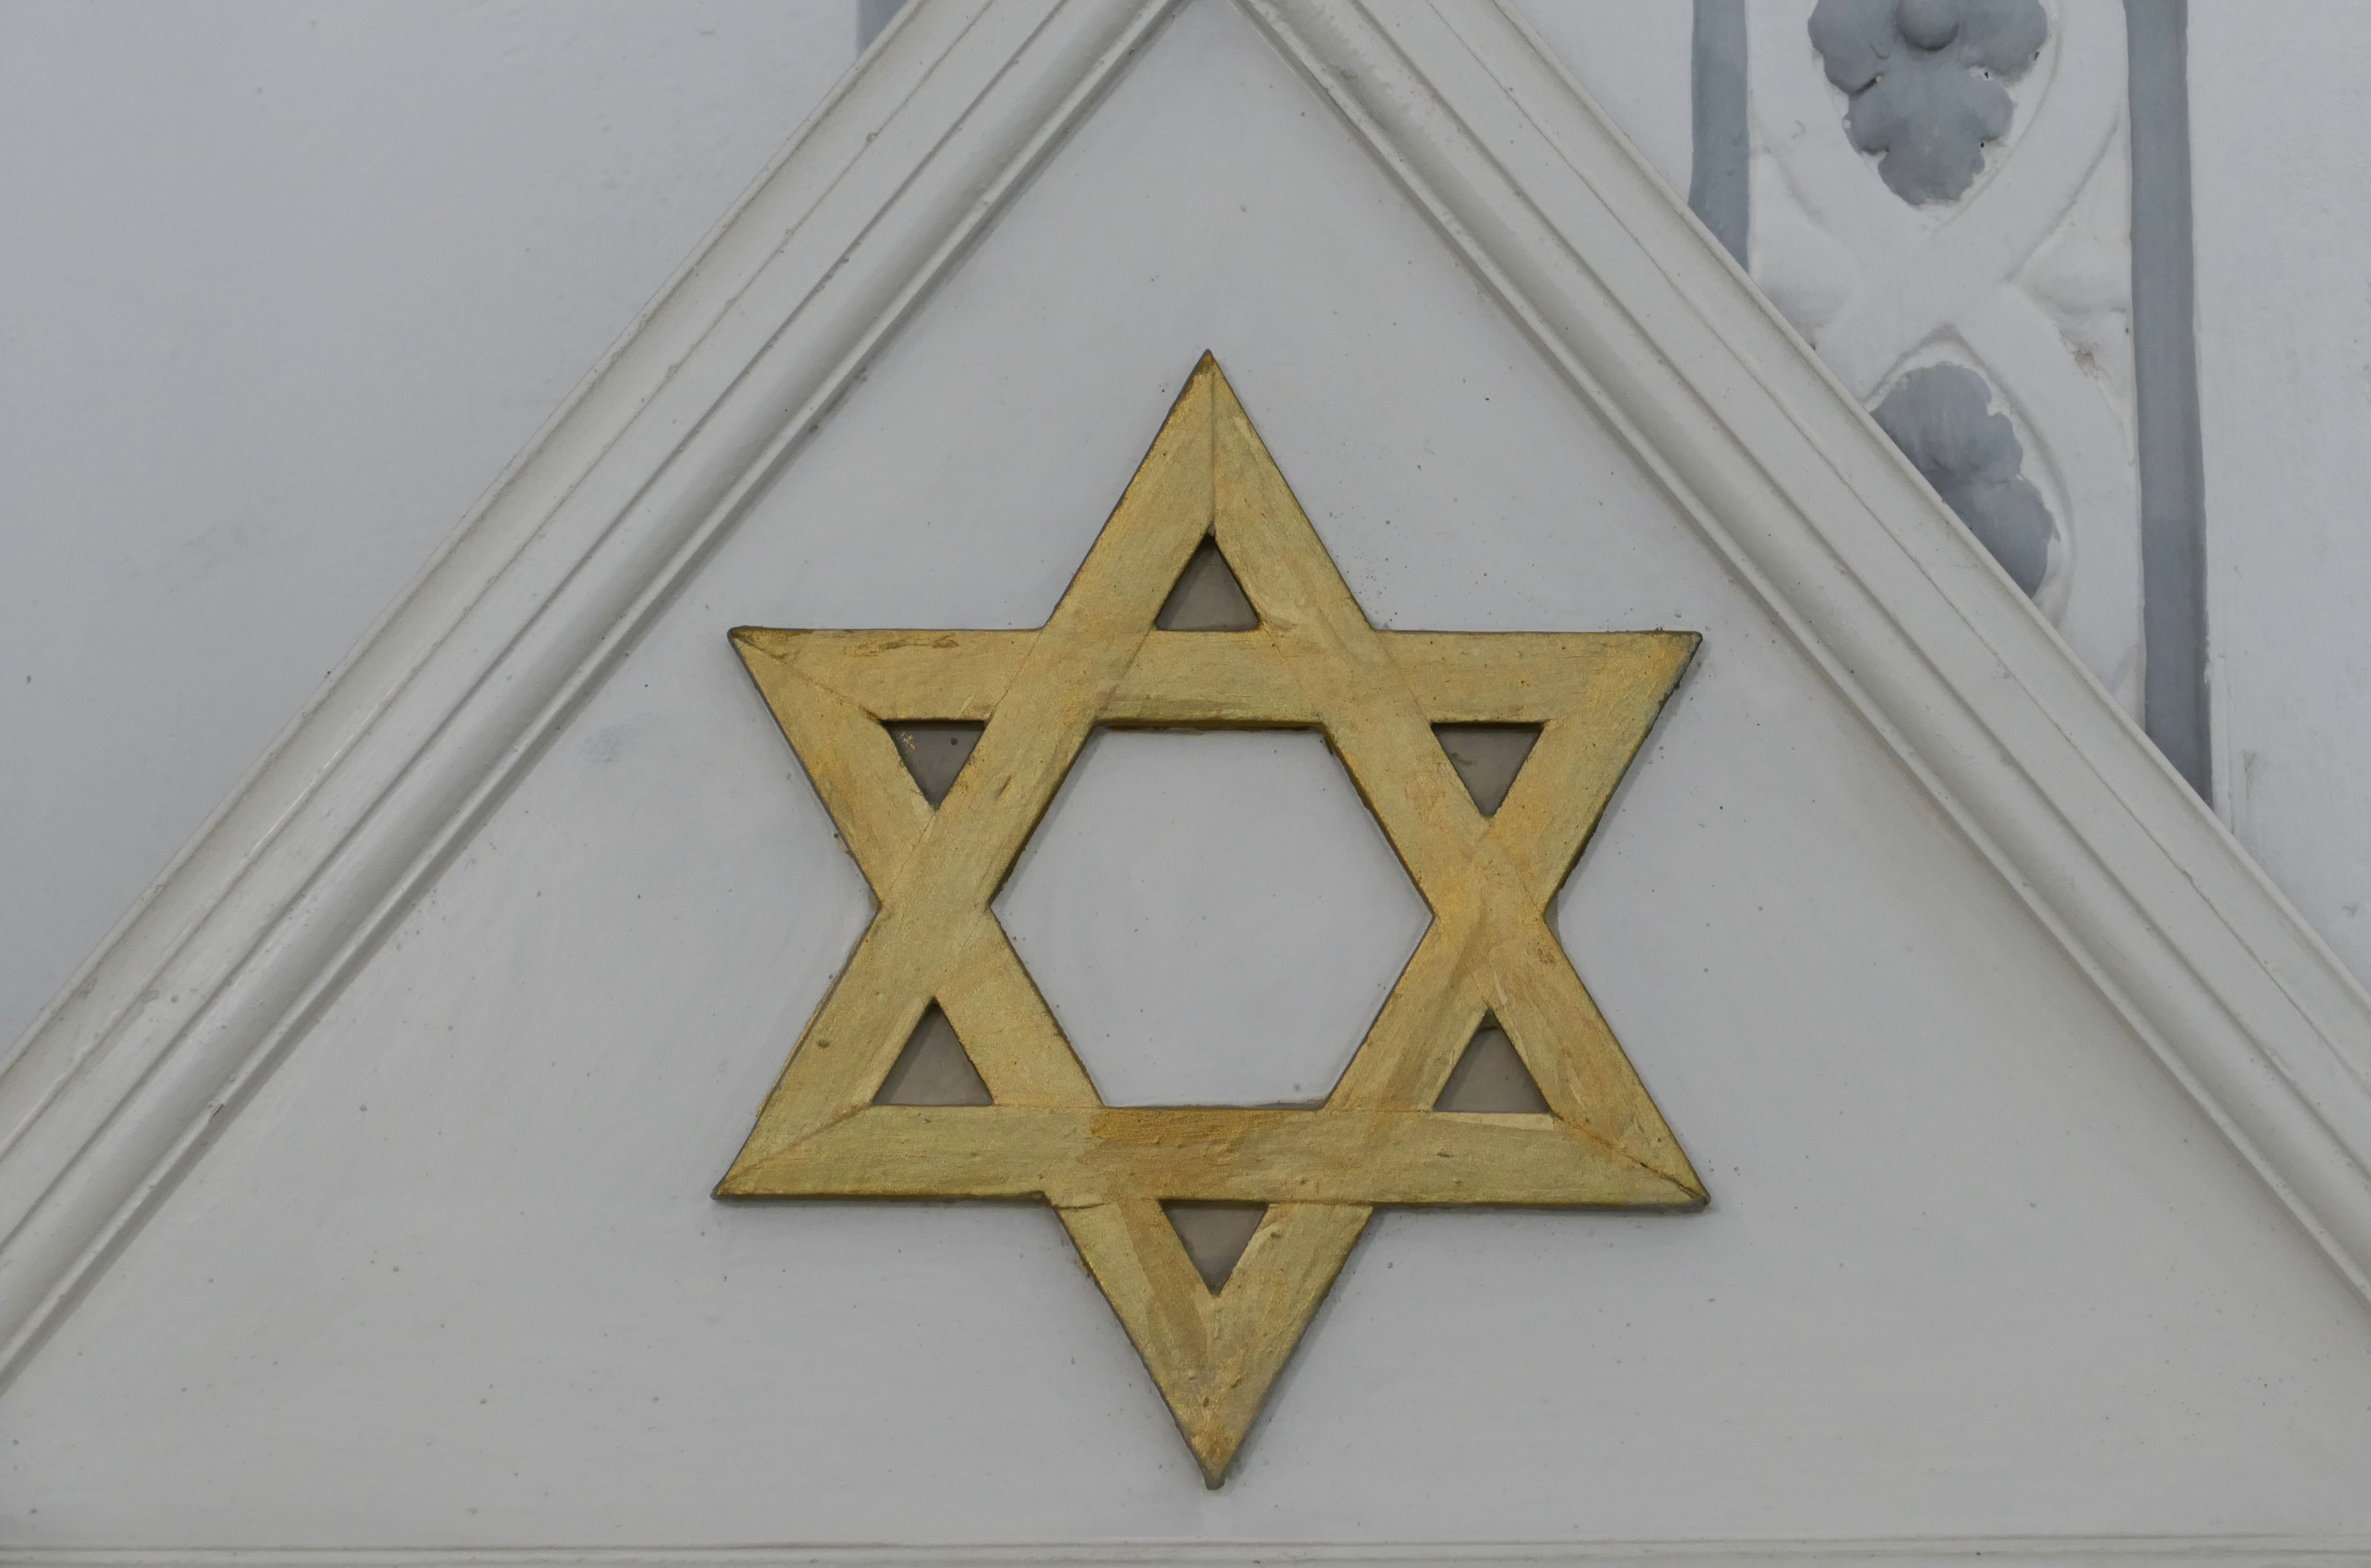 Zu sehen ist ein goldener Judenstern auf einer Fassade